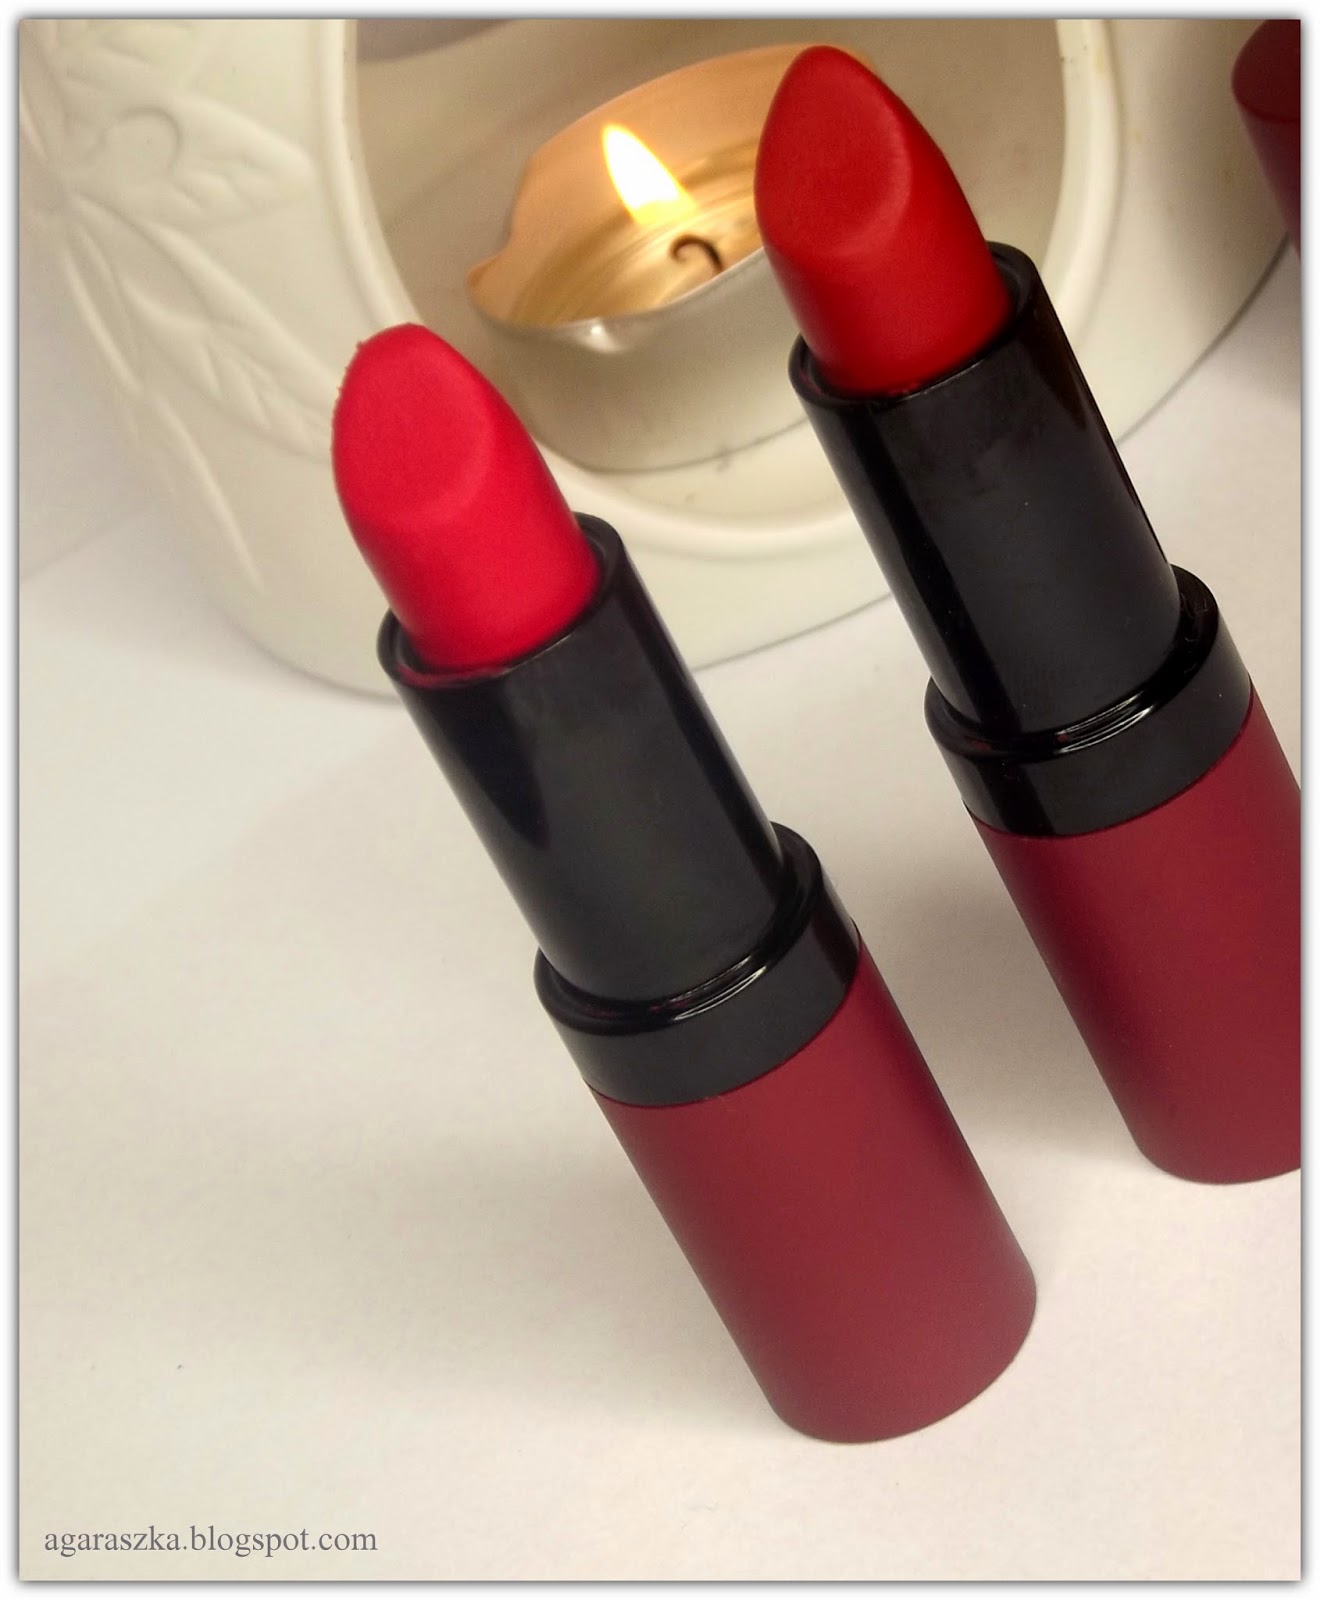 aGaRaSzKa Golden Rose Velvet Matte Lipstick 11 oraz 18